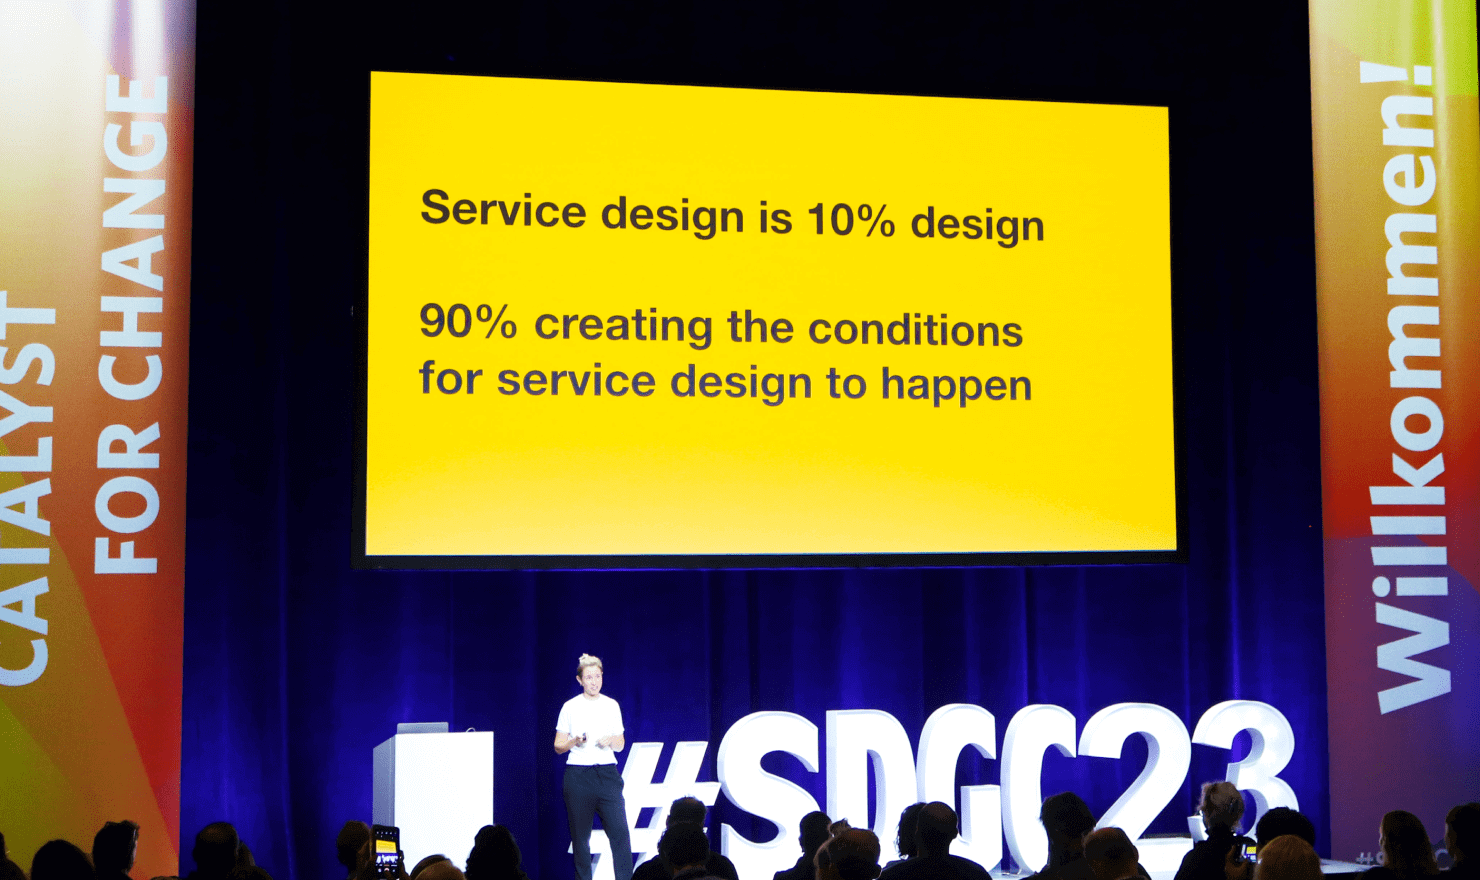 画像：Lou Downe 氏のキーノート中のスライド “Service design is 10% design. 90% creating the conditions for service design to happen.”